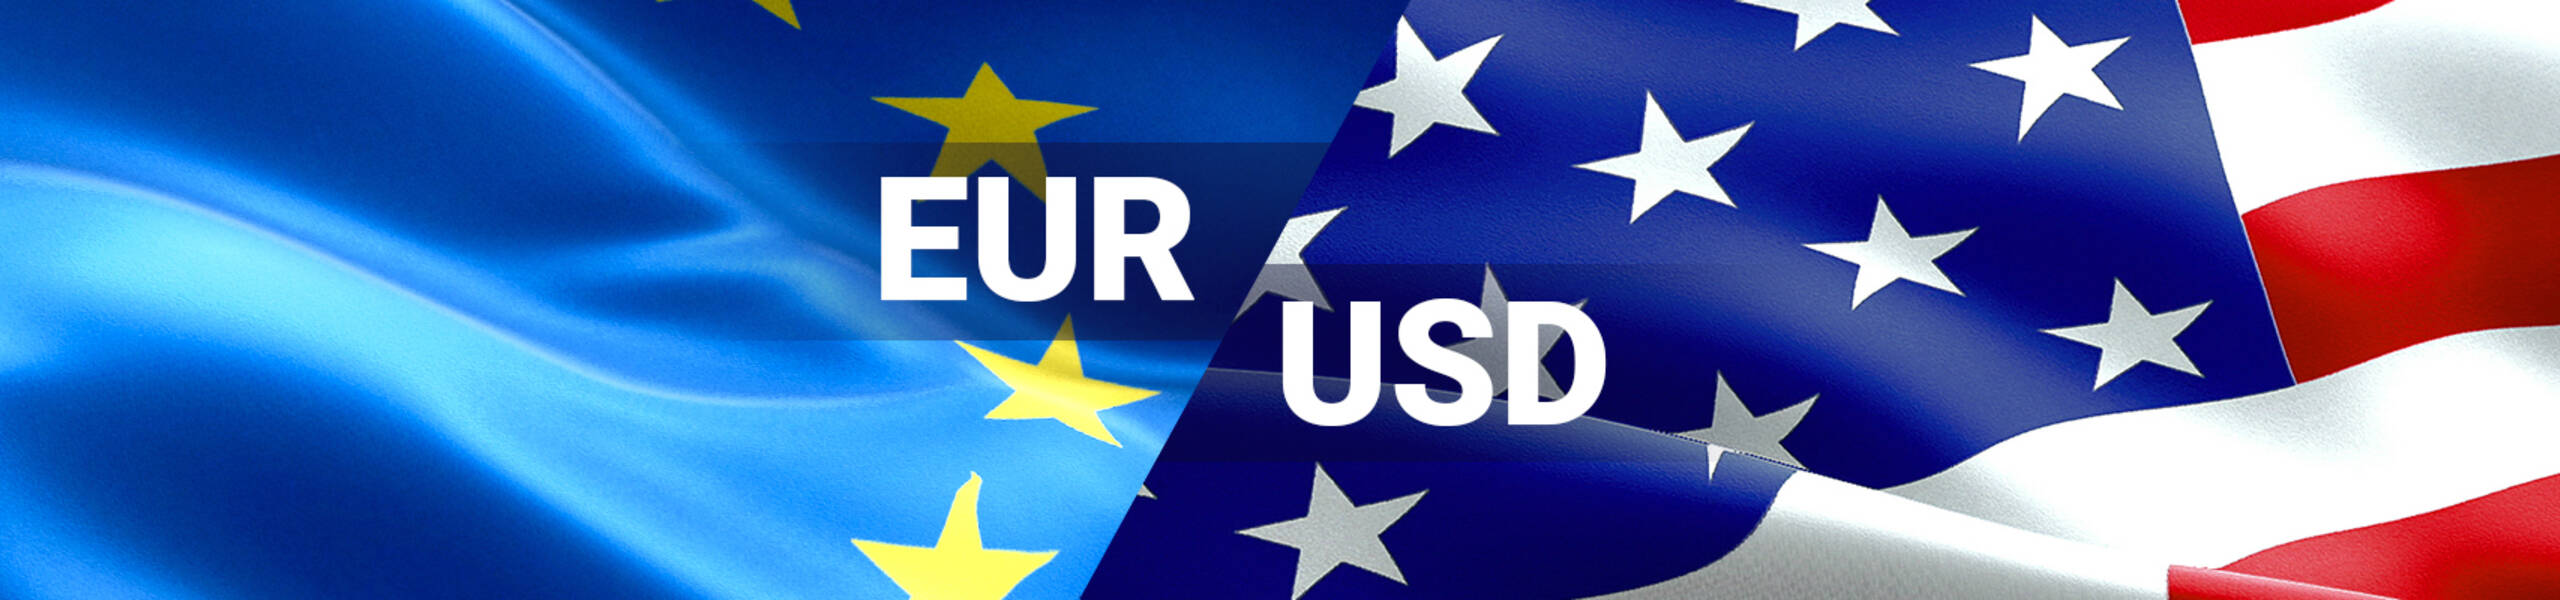 EUR/USD: uptrend kemungkinan berlanjut